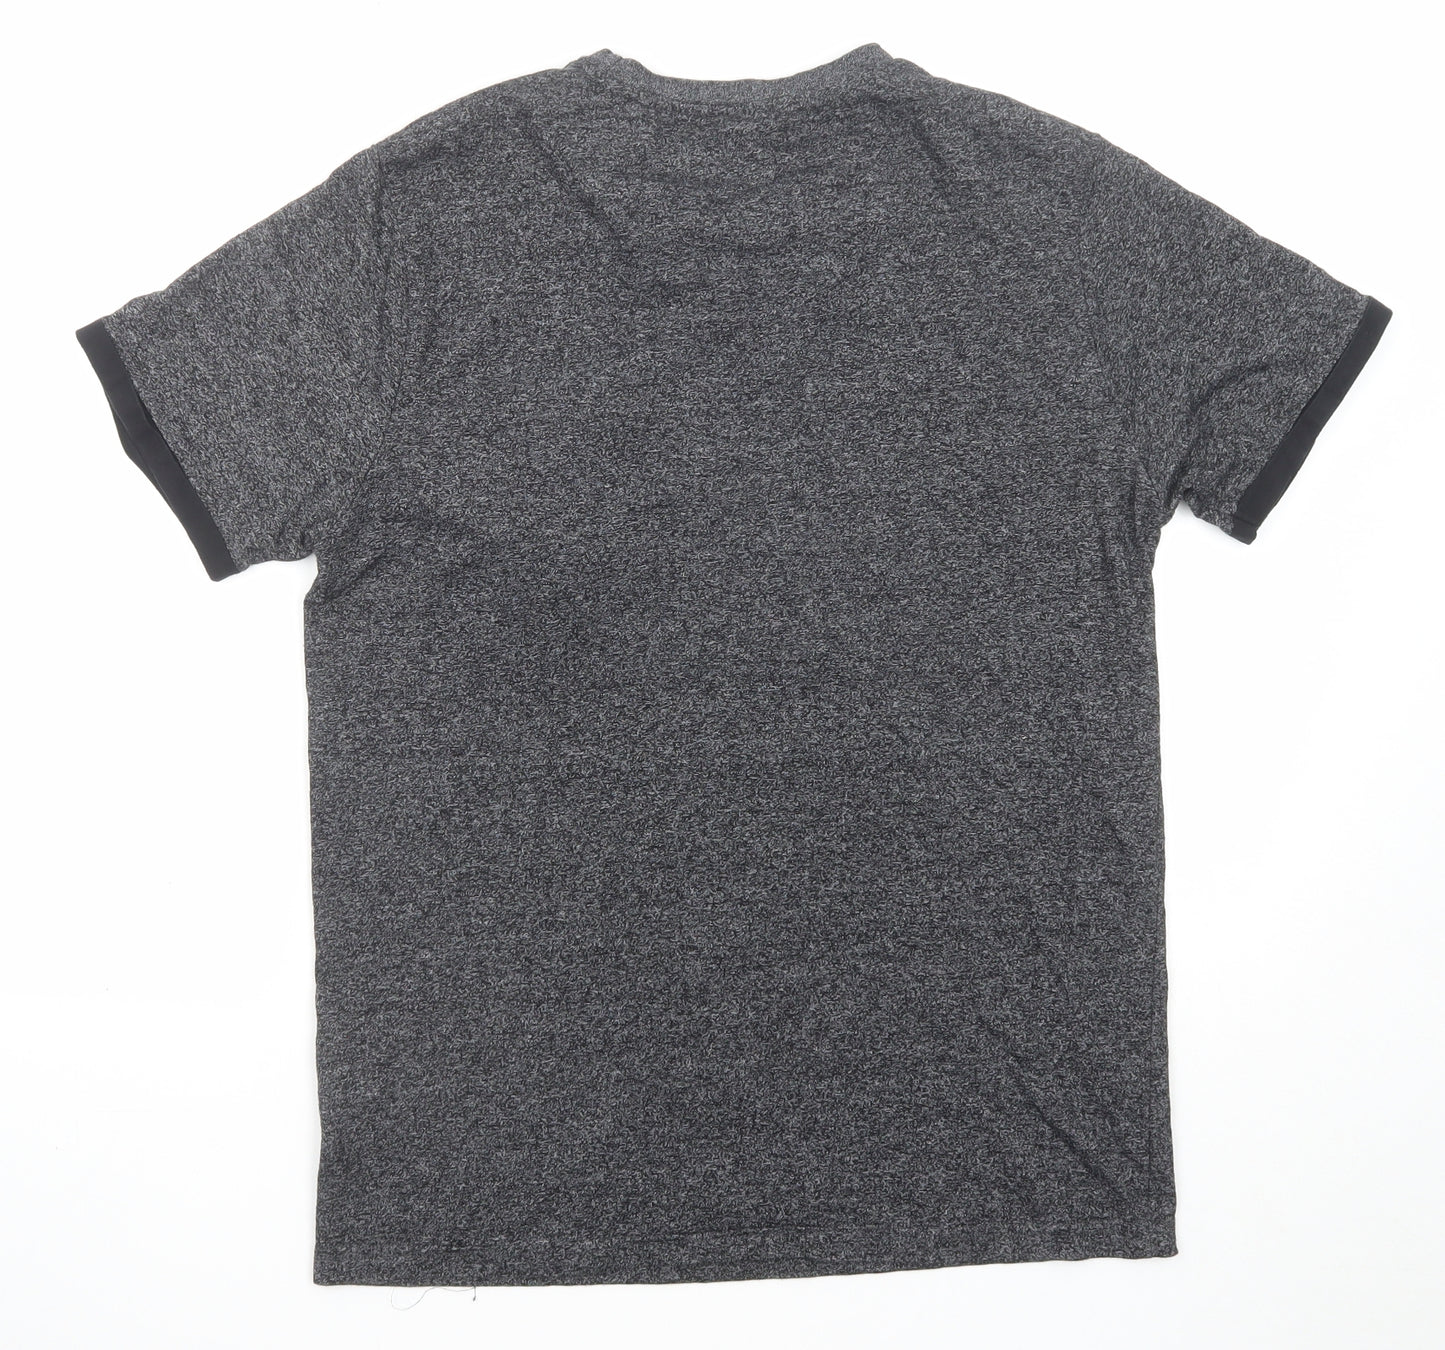 Denim & Flower Mens Grey Cotton T-Shirt Size M Round Neck